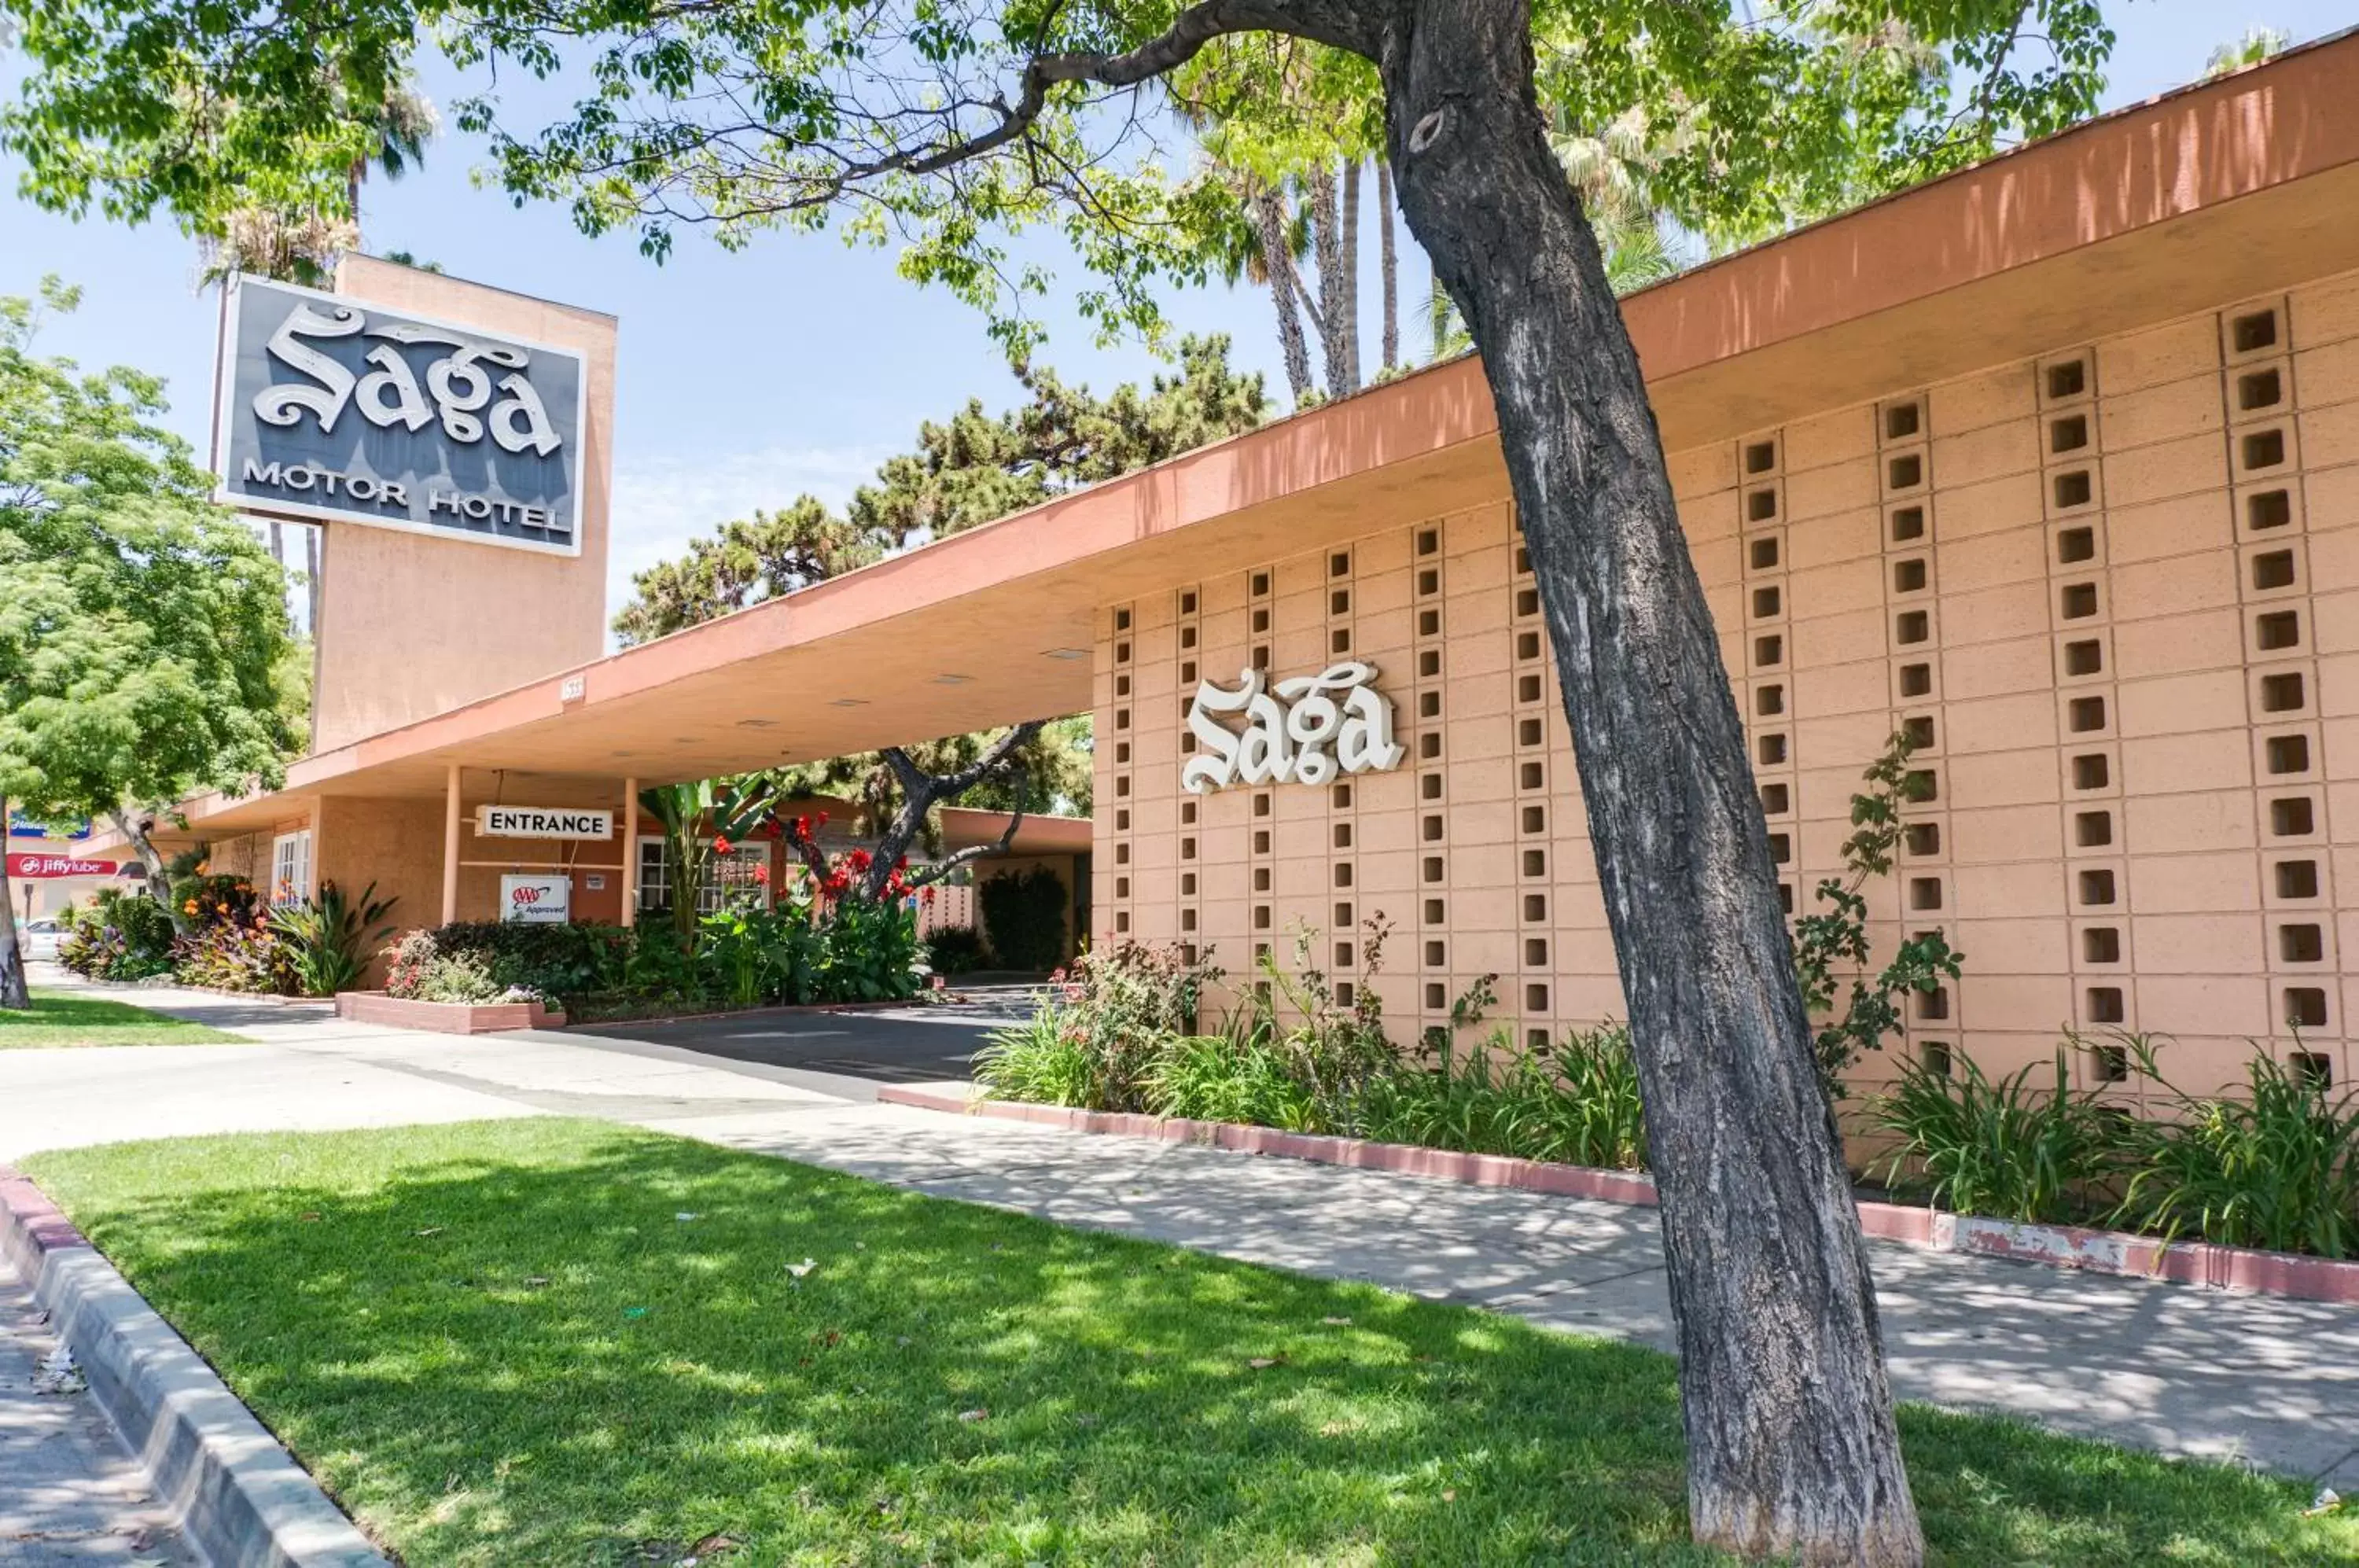 Facade/entrance, Property Building in Saga Motor Hotel Pasadena